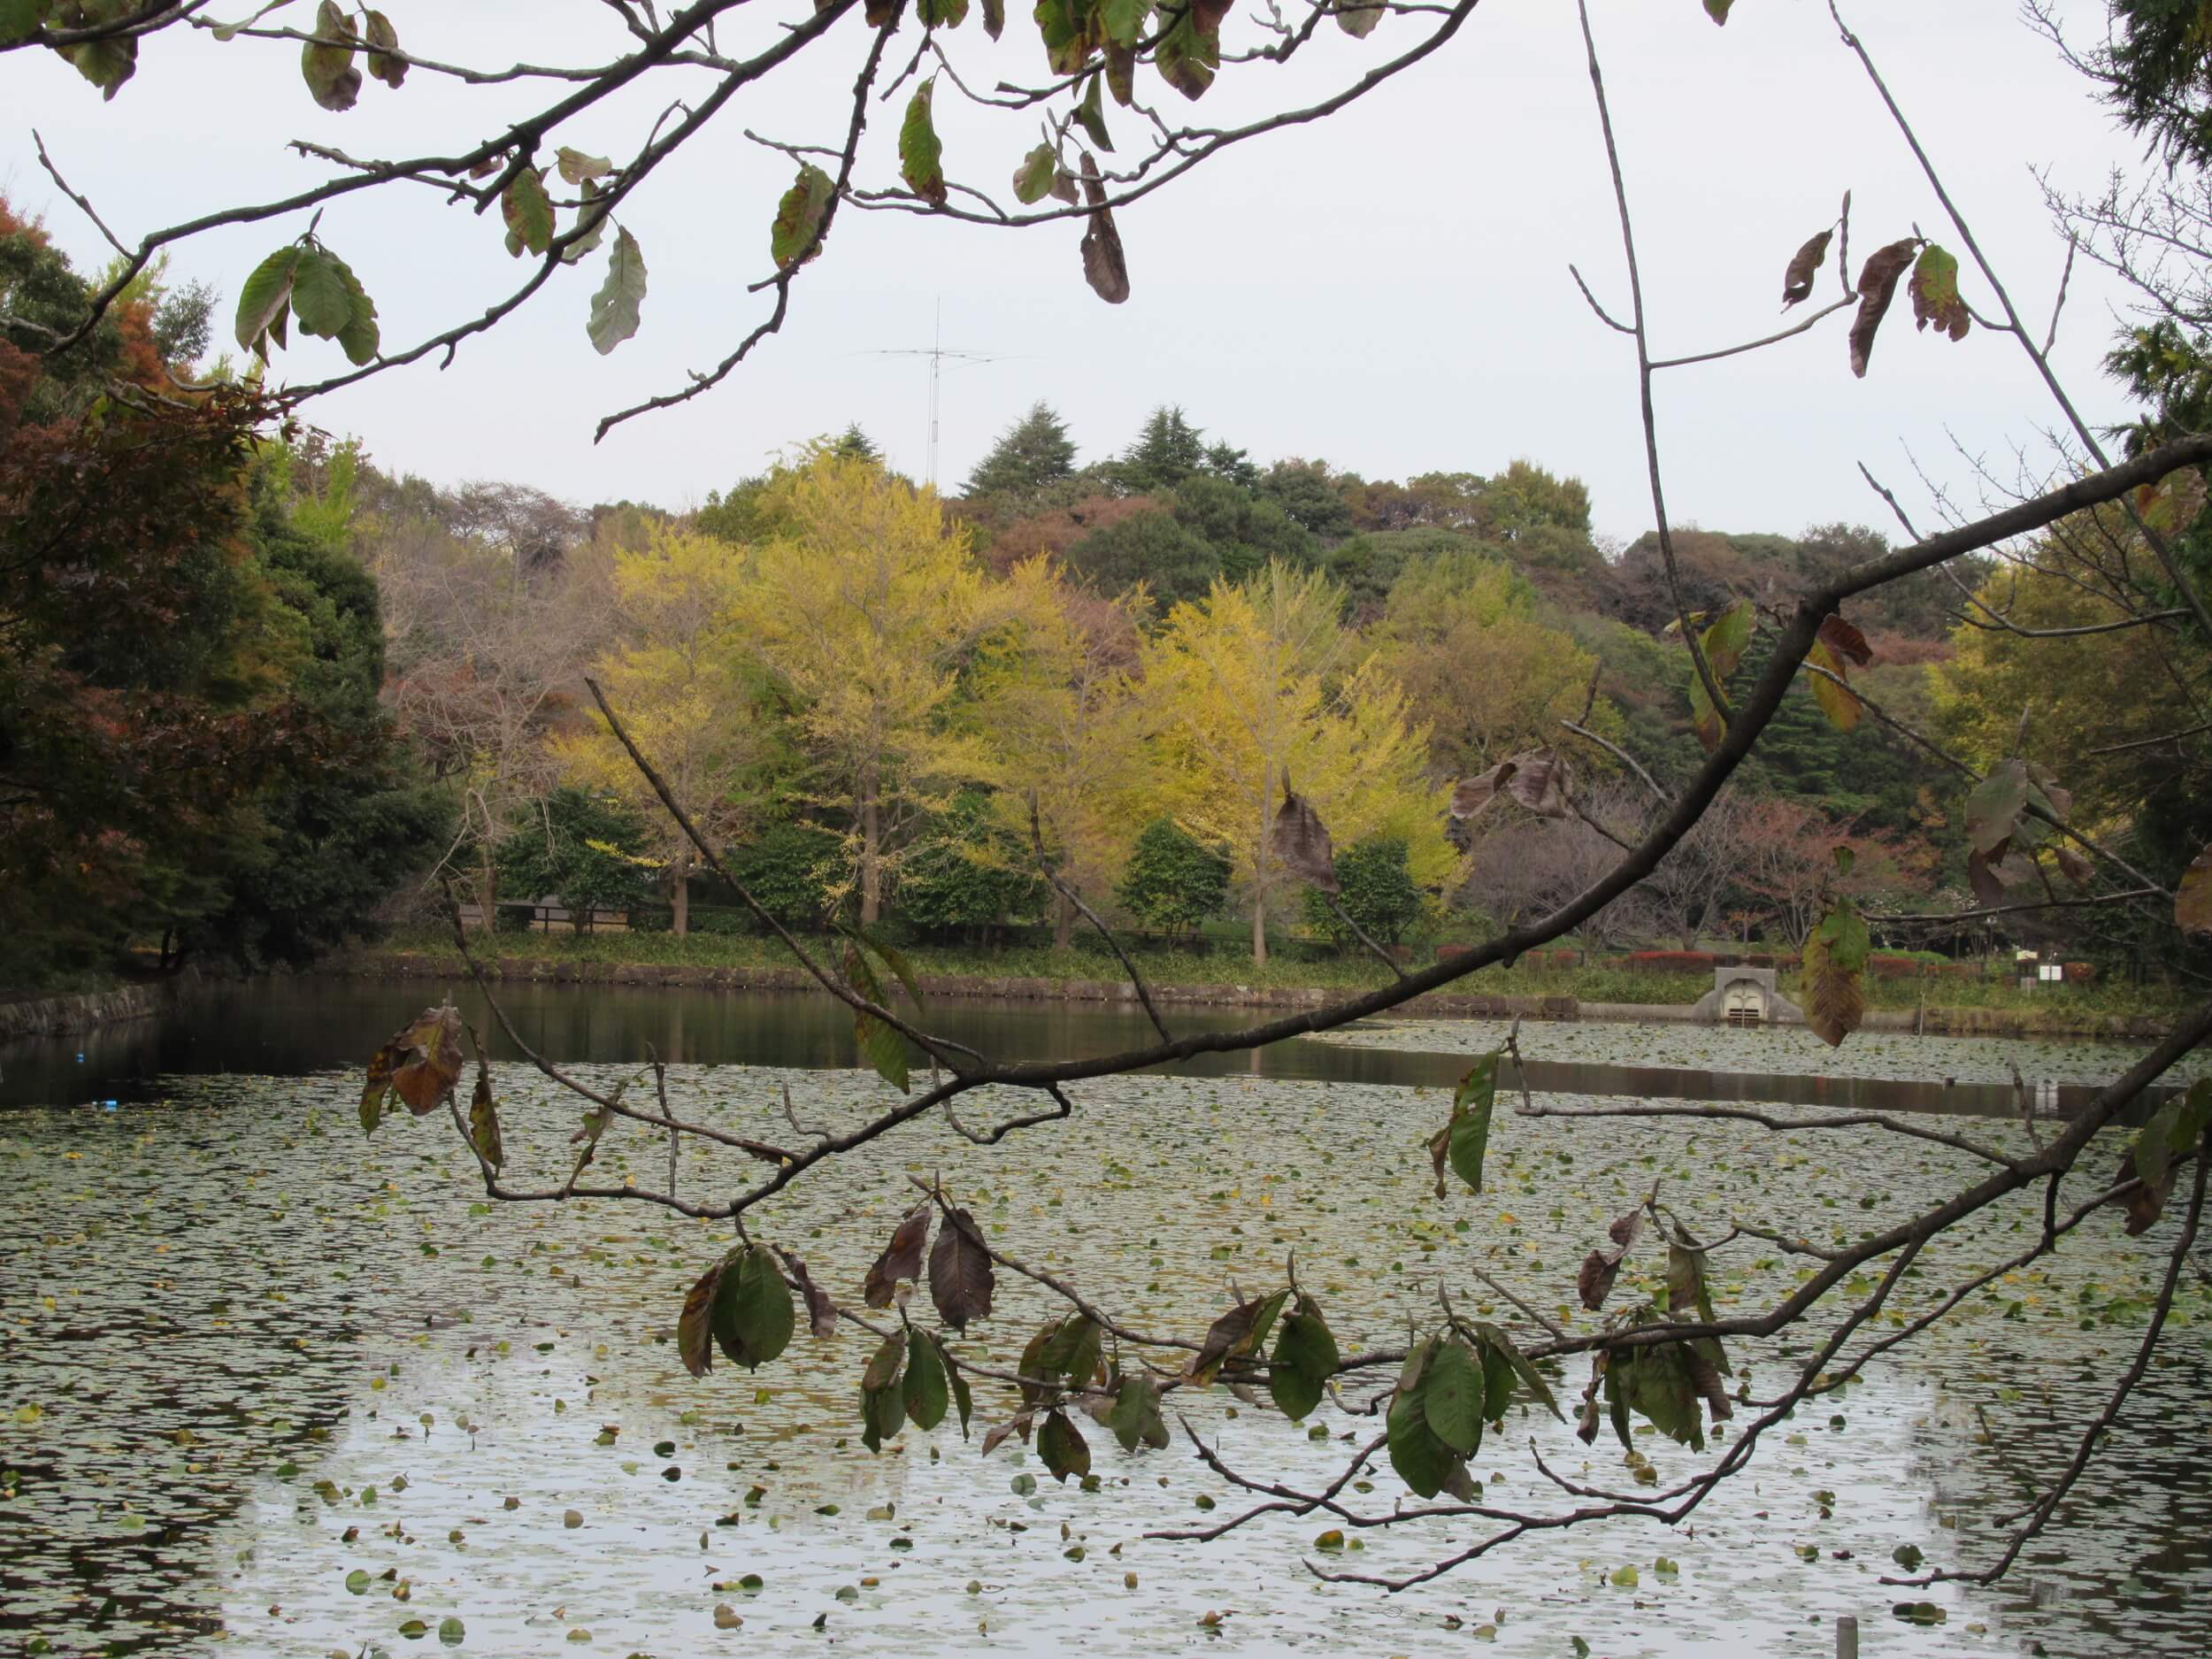 Kaminoike(Upper pond)・Autumn leaves3